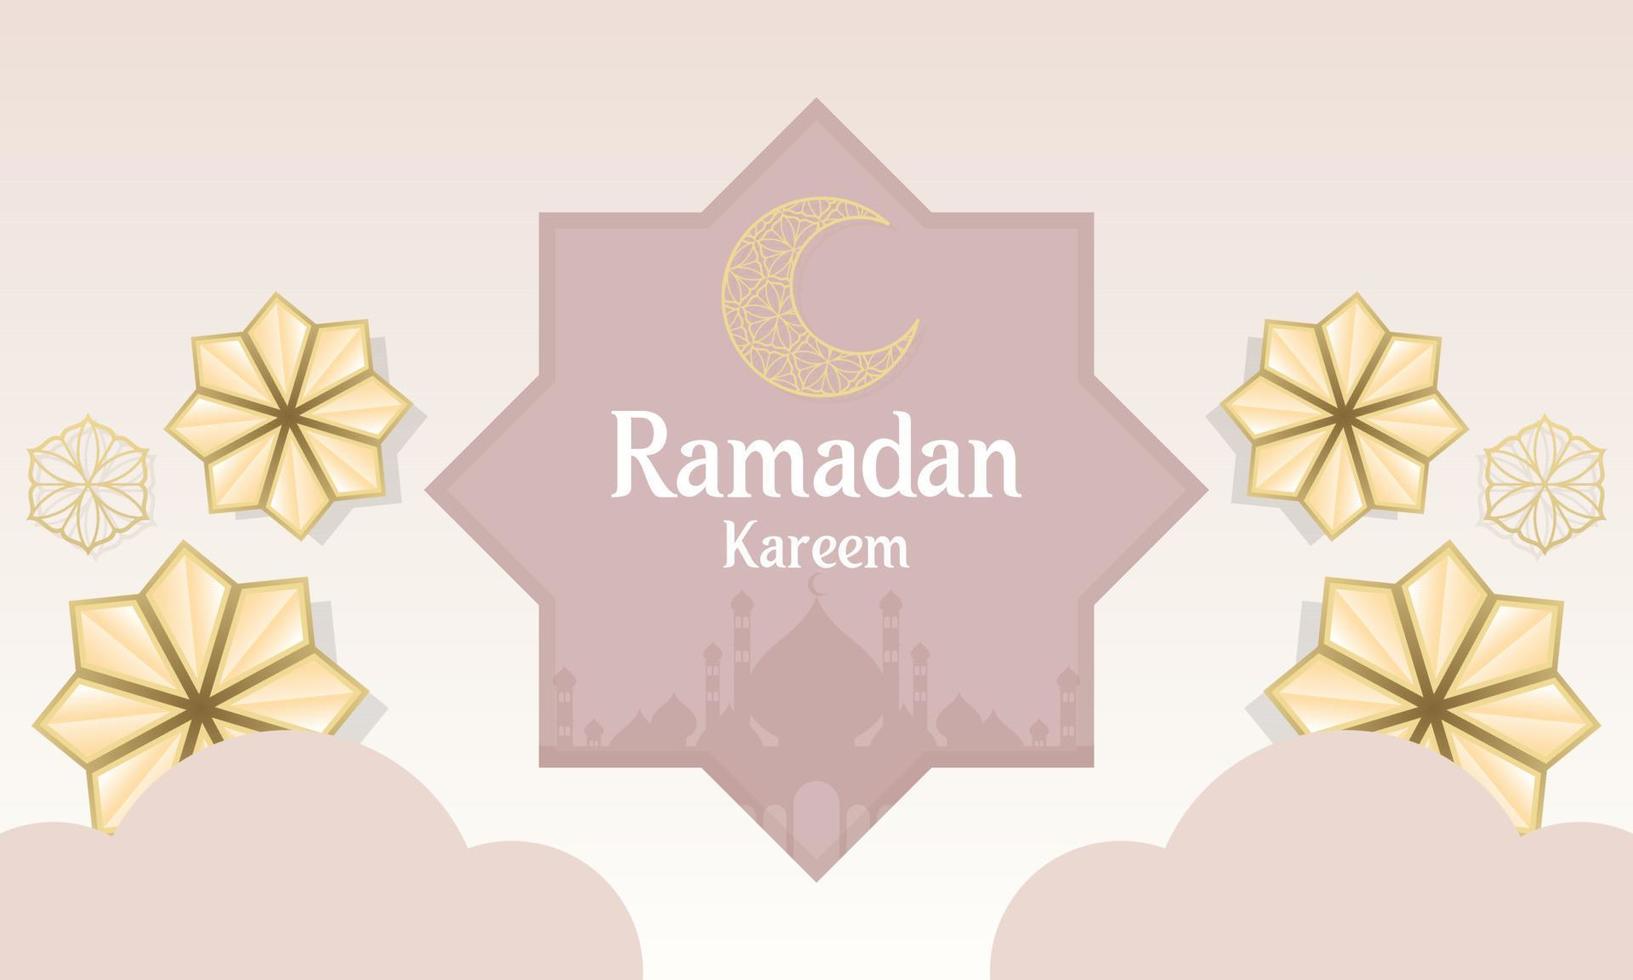 Ramadan kareem di islamico Festival design con islamico decorazioni vettore